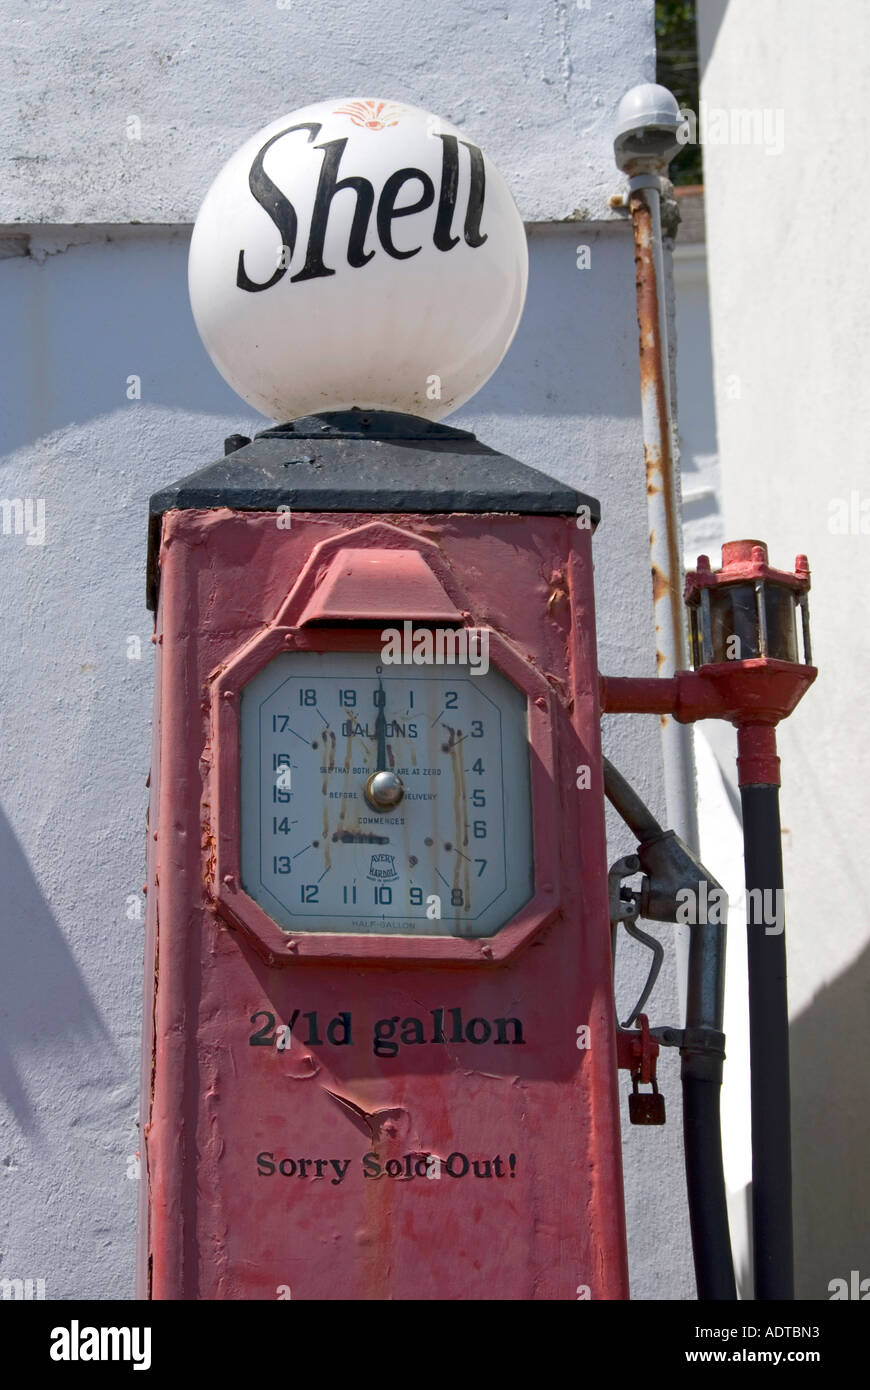 Une station de remplissage d'essence montre l'ancienne pompe à essence Shell affichant des prix anciens deux shillings un penny le gallon à St Mawes Cornwall Angleterre Royaume-Uni Banque D'Images